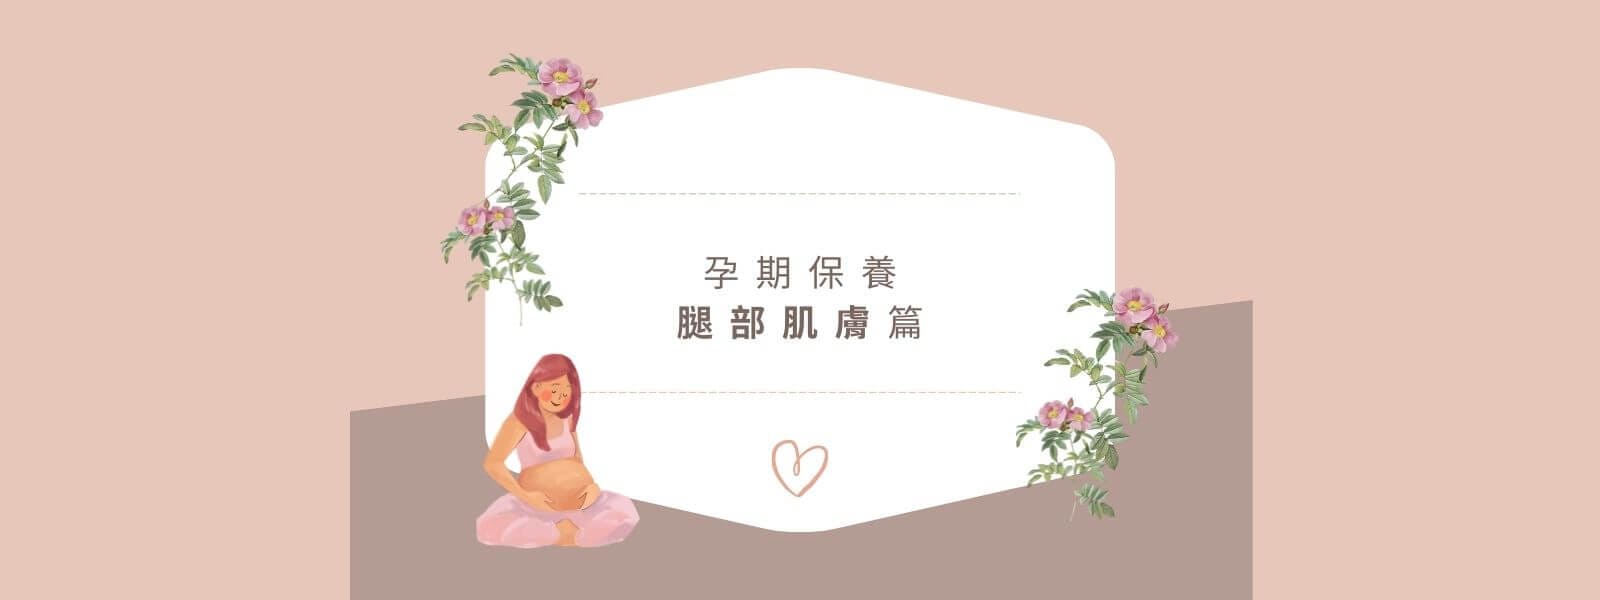 白底咖啡色字呈現標題-孕期保養(腿部肌膚)，標題周圍有孕婦坐著摸肚子，表情祥和，以及鮮花跟愛心